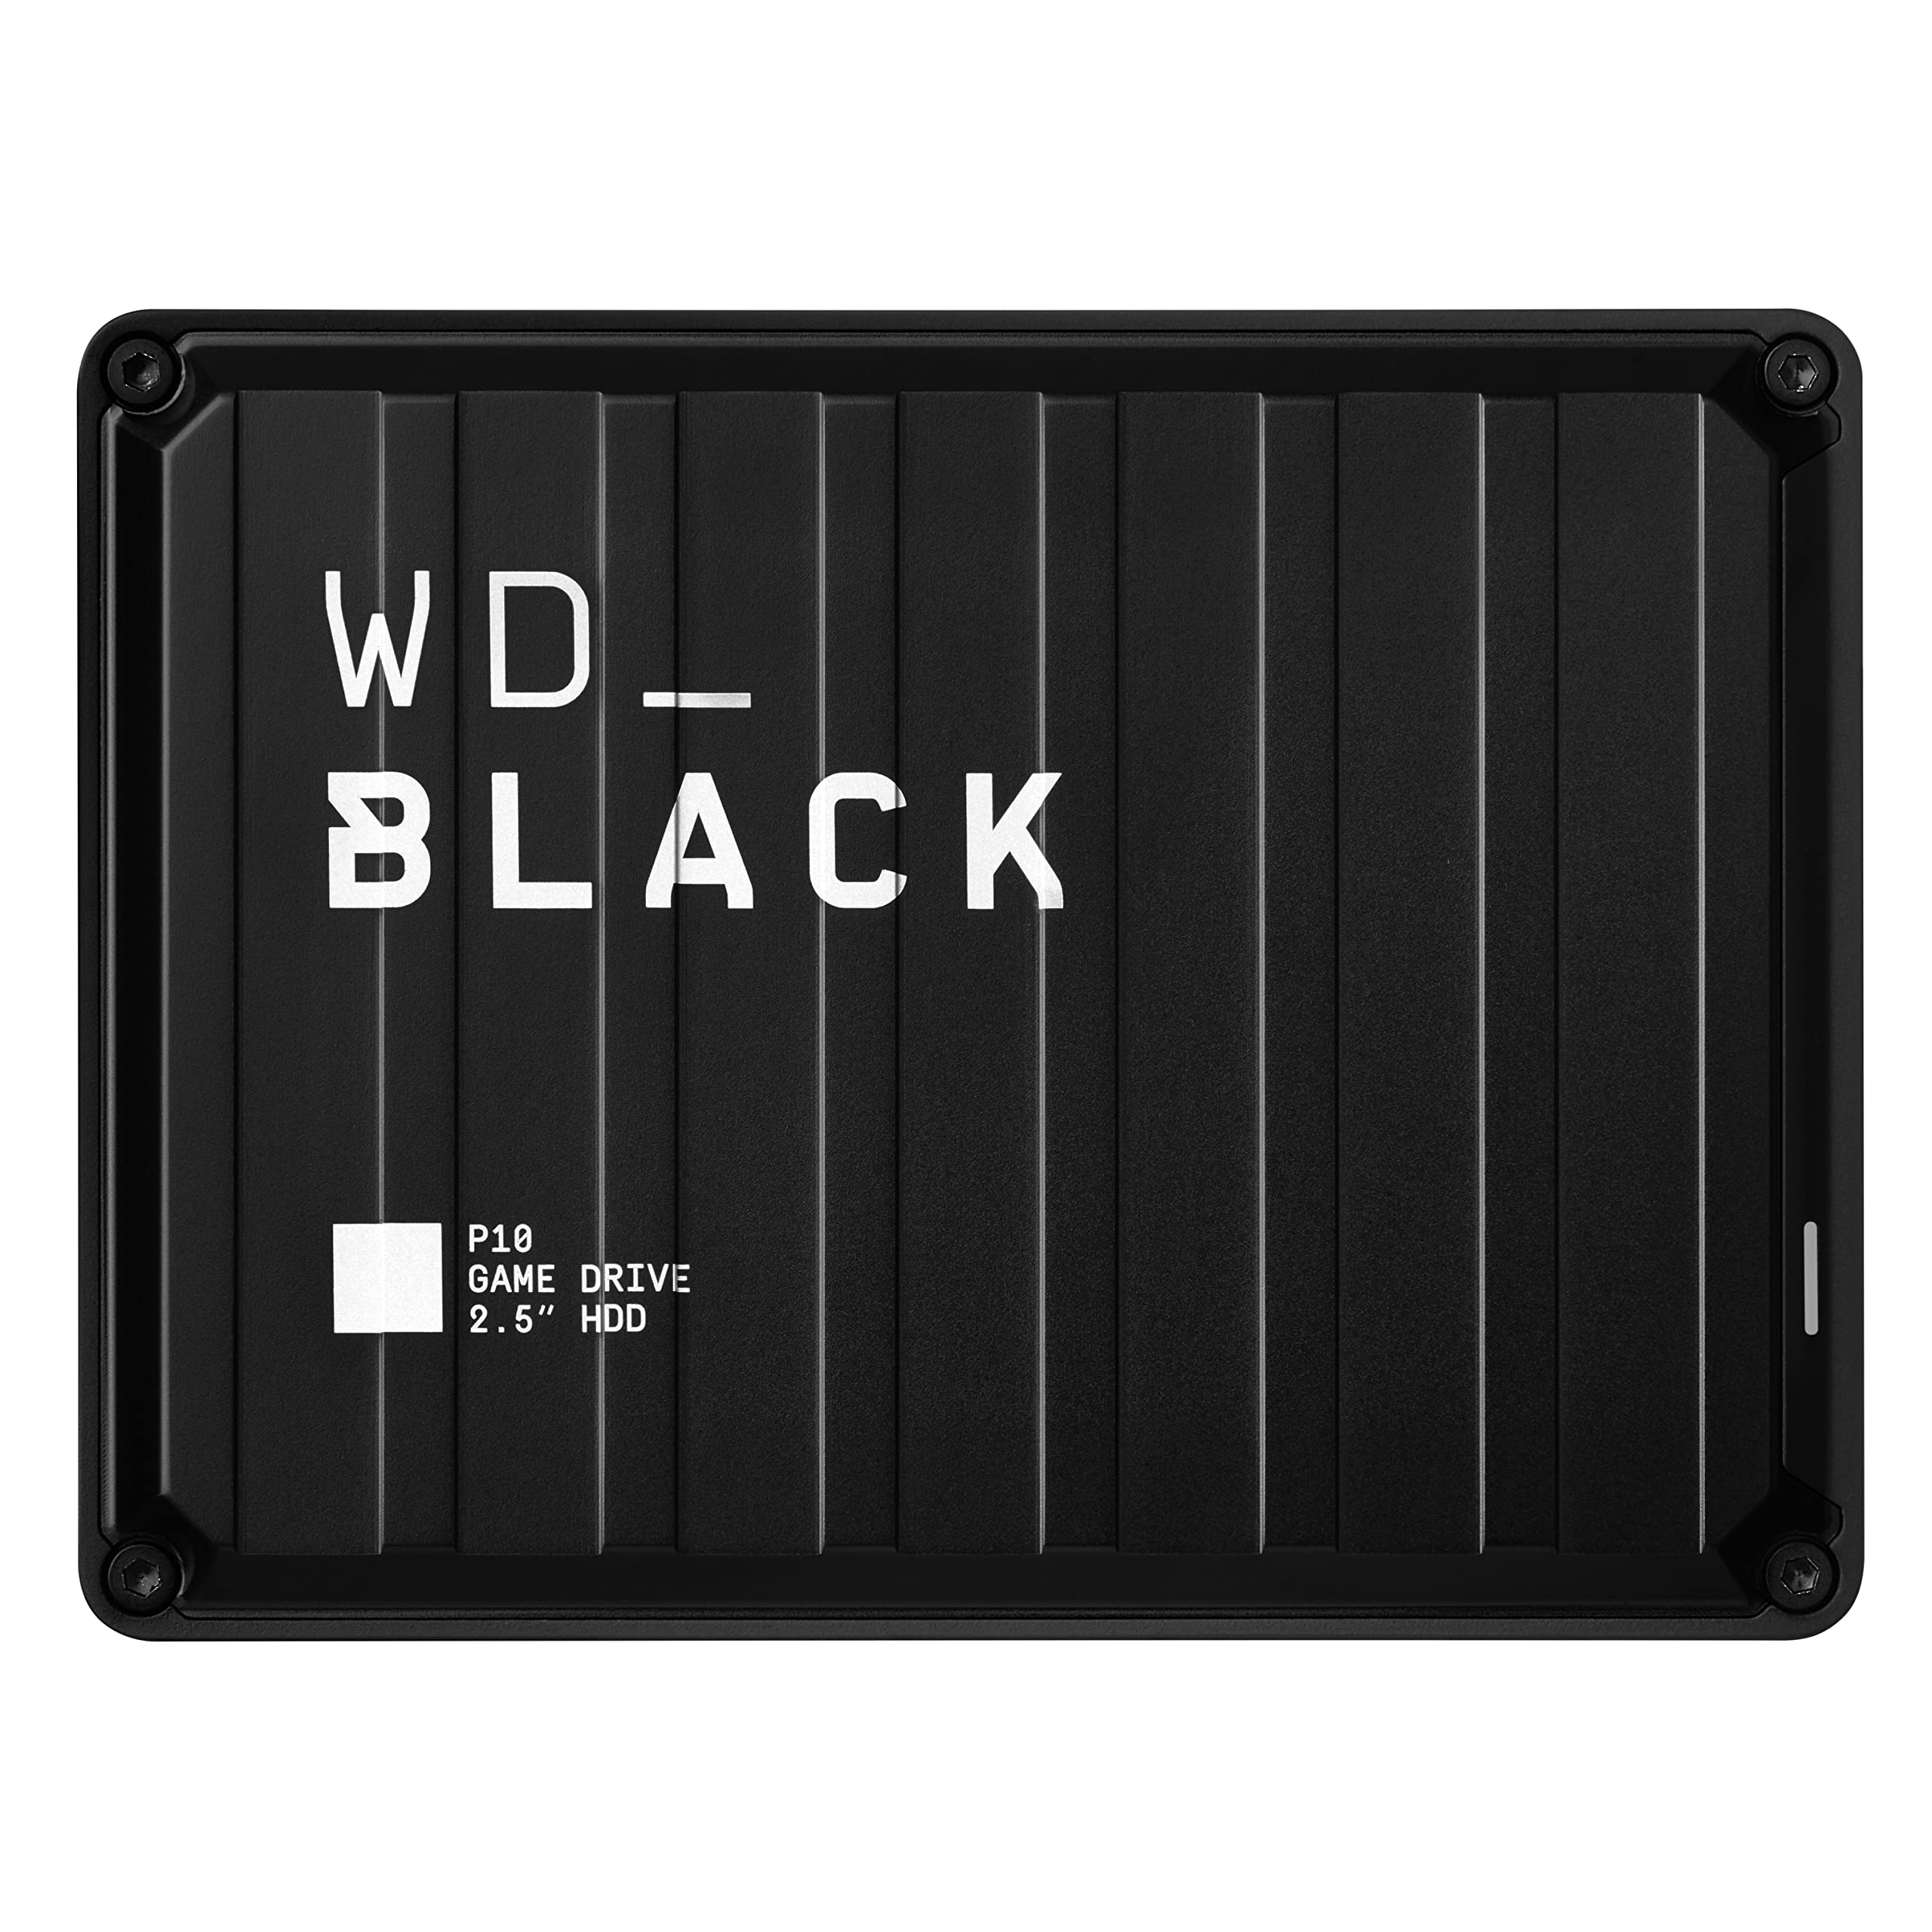 WD_BLACK P10 Game Drive 2 TB Externe Gaming Festplatte (Mobile und robuste Festplatte, für Konsole und PC, bis zu 125 Spiele speichern) Schwarz